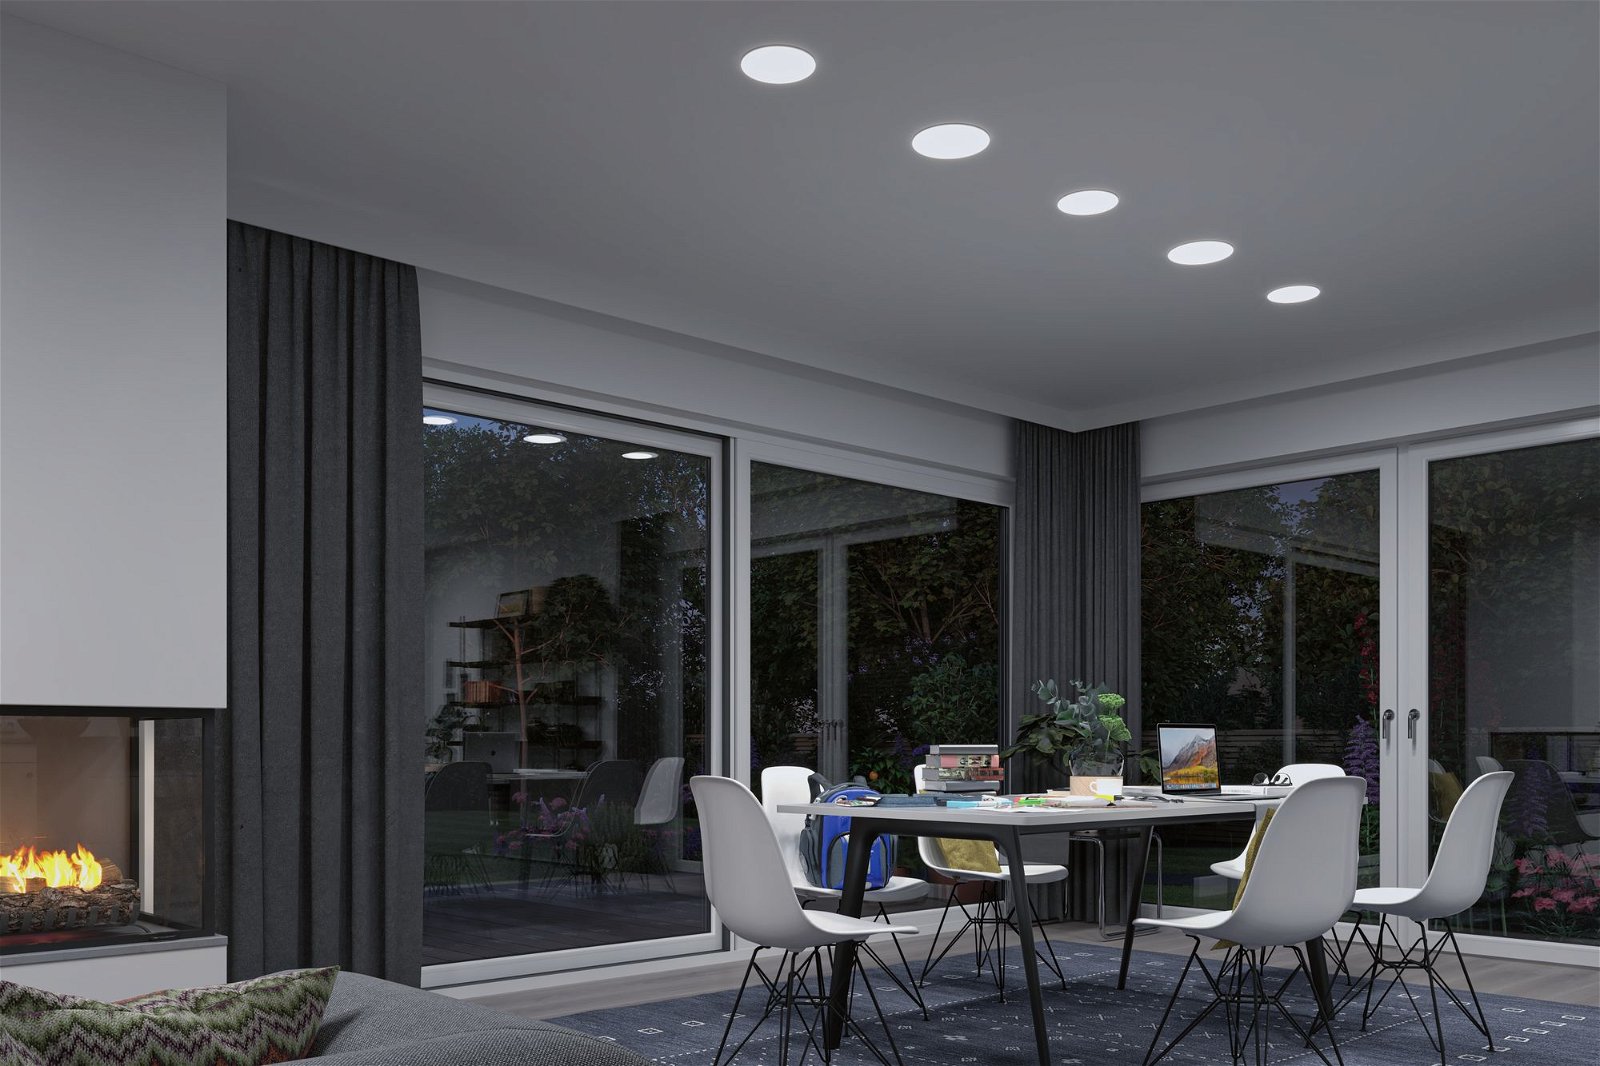 VariFit Panneau encastré LED Smart Home Zigbee Veluna IP44 rond 215mm Tunable White Satiné